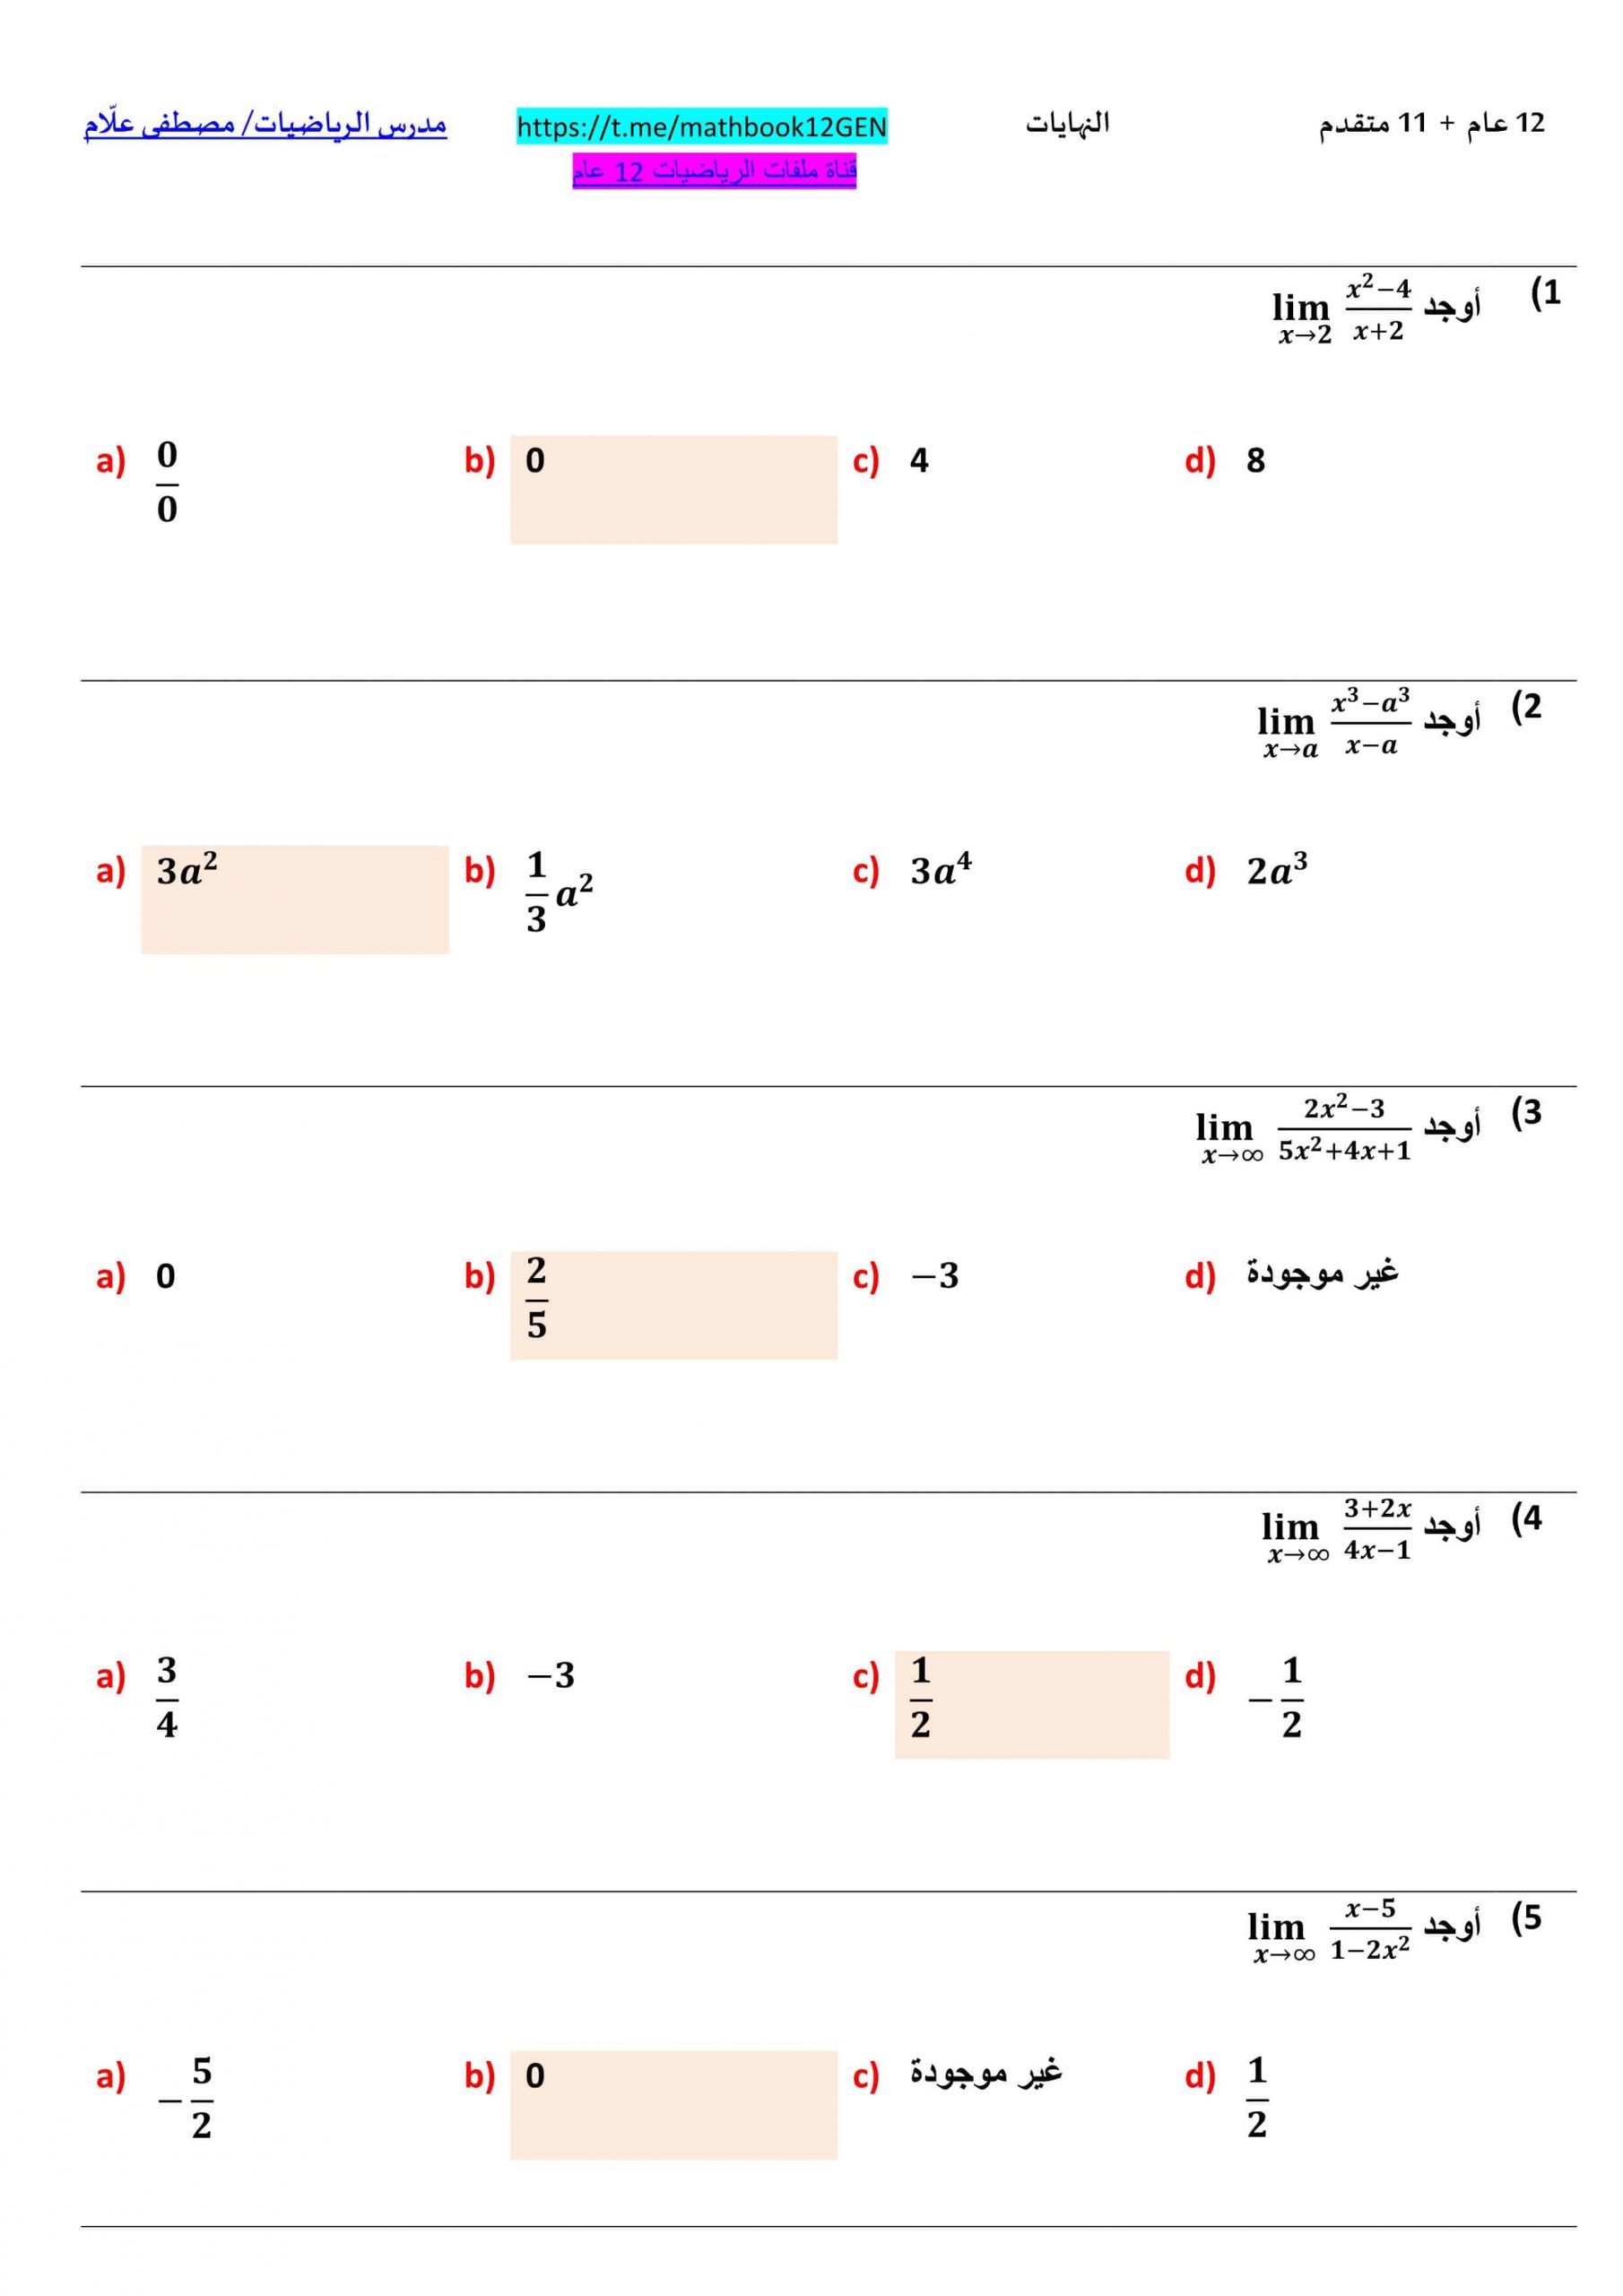 حل أوراق عمل النهايات الصف الثاني عشر عام مادة الرياضيات المتكاملة 